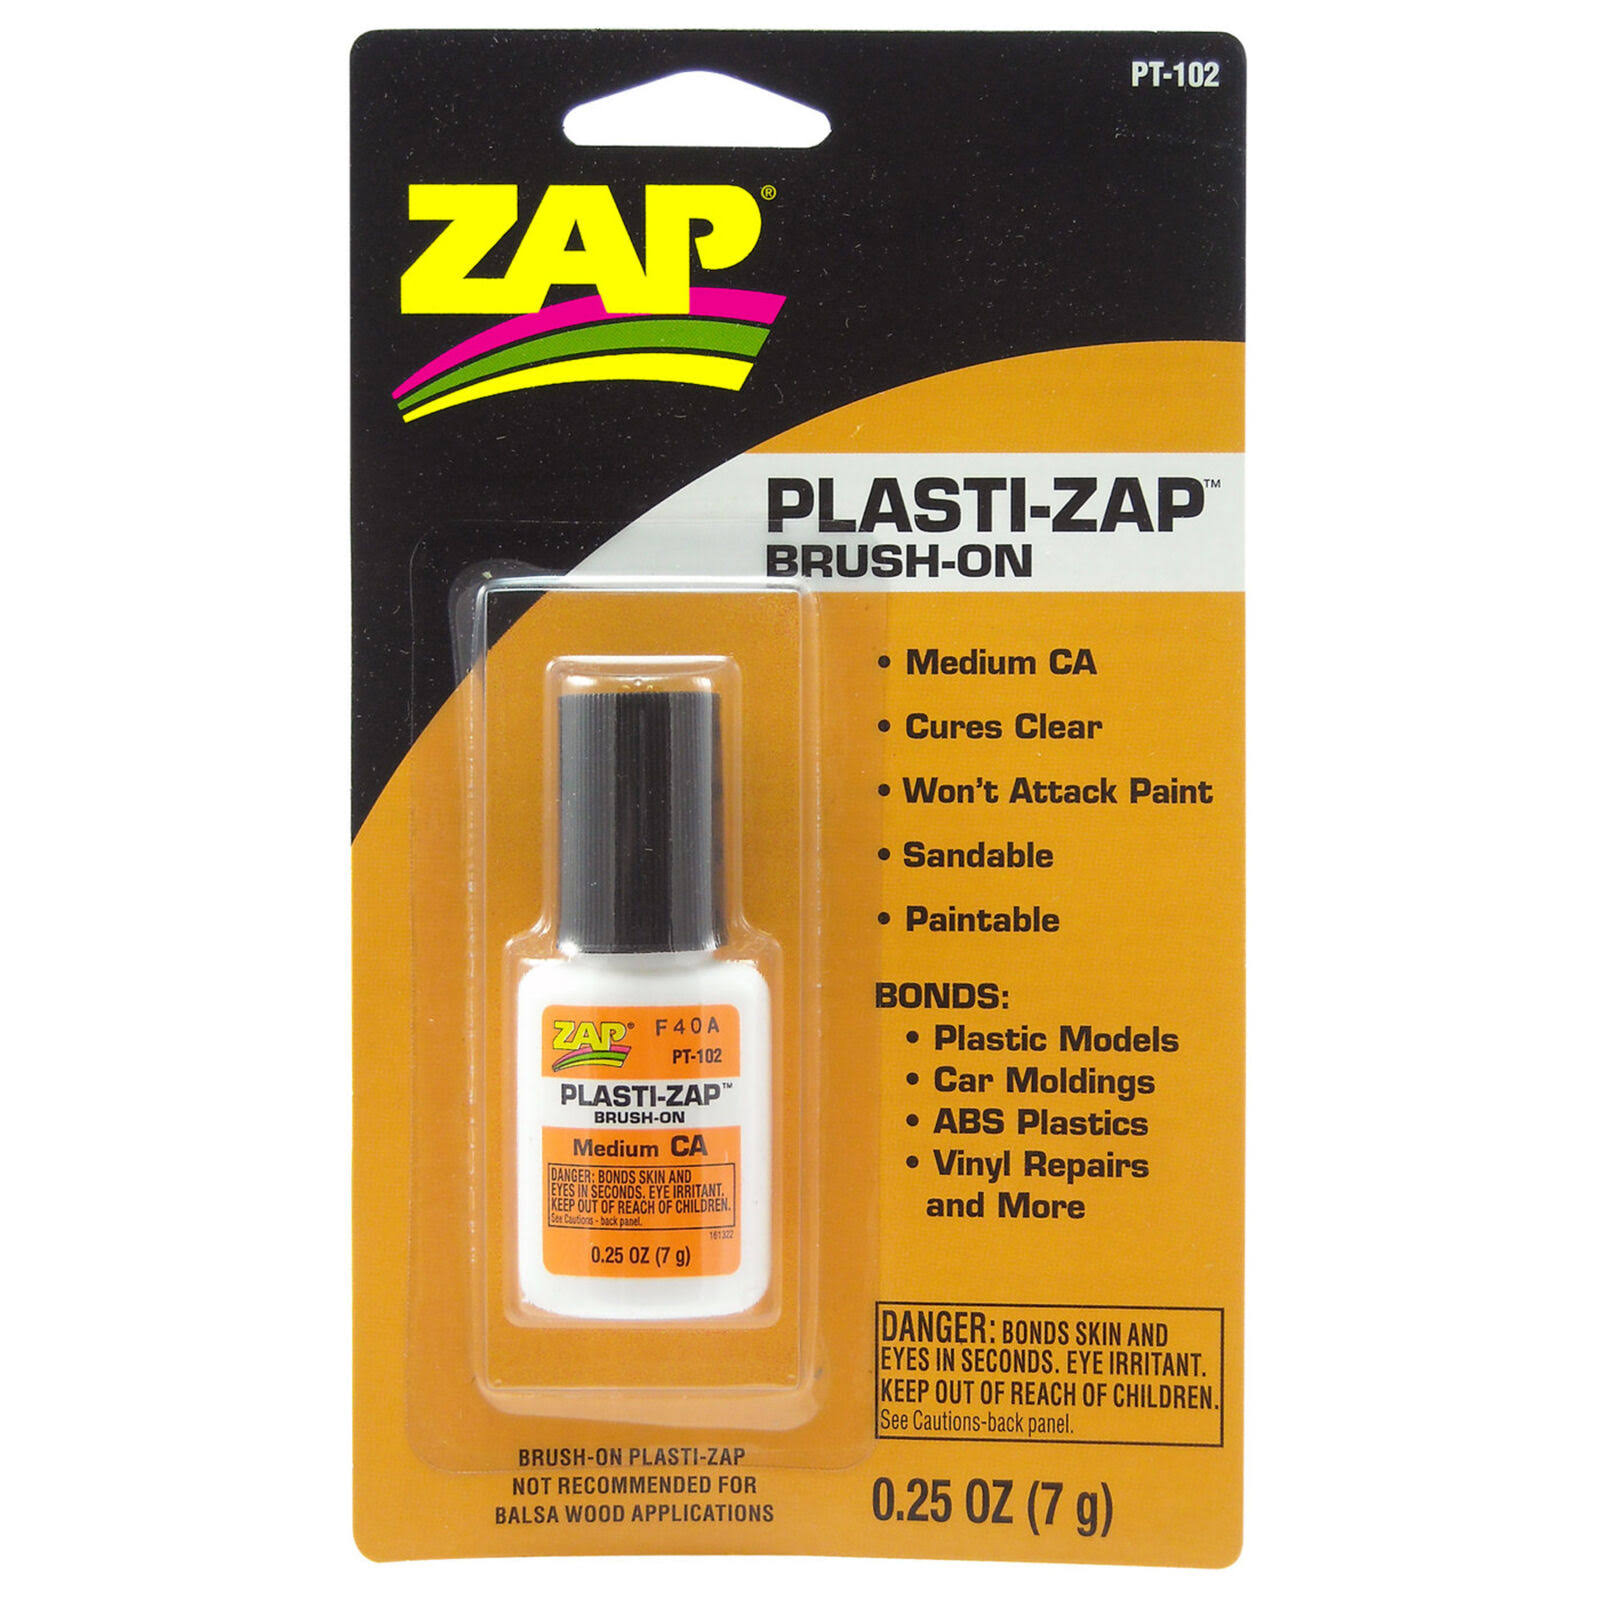 Zap Plasti-Zap Brush-on Glue - 0.25oz